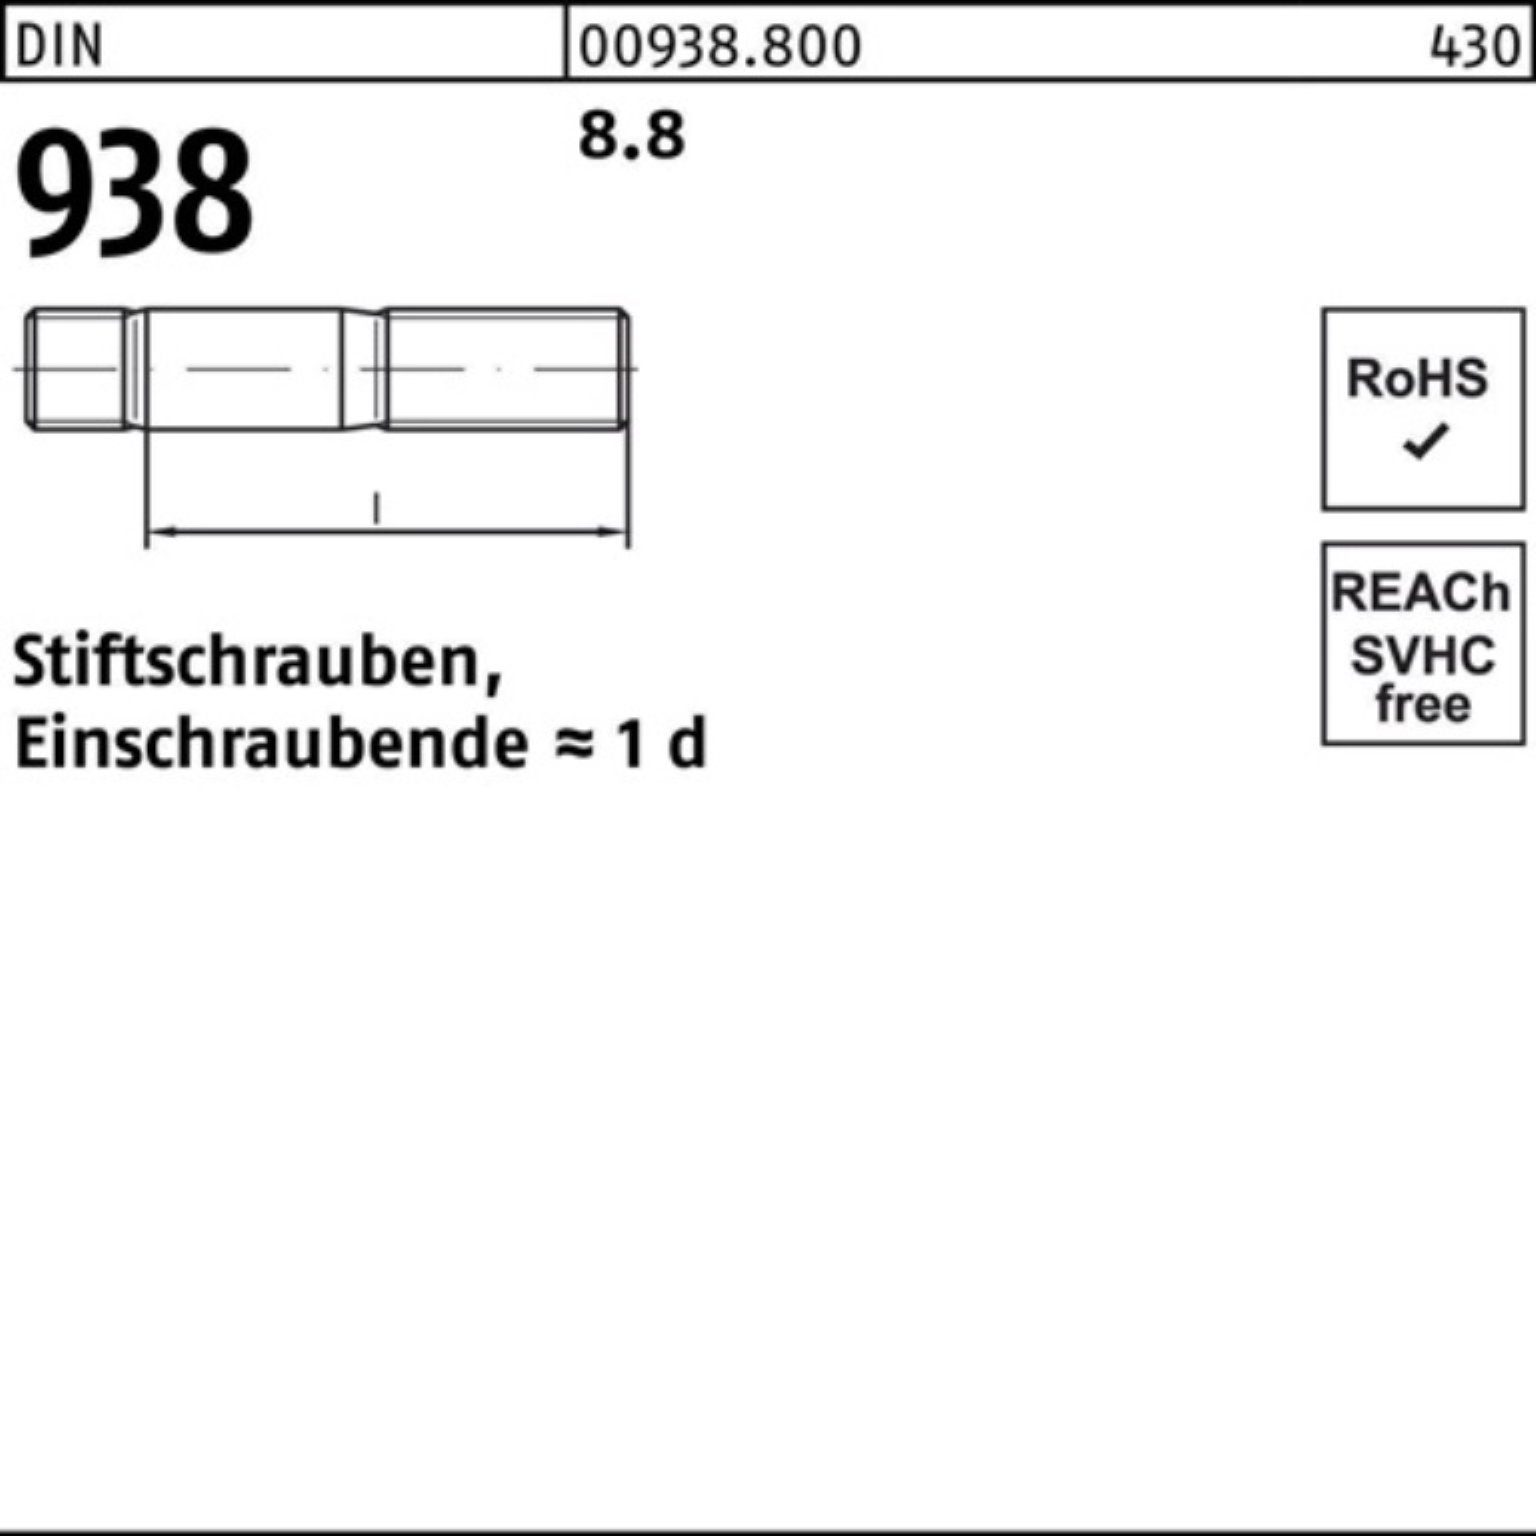 M24x Reyher Pack 8.8 Stiftschraube Stück 50 Stiftschraube 938 DIN 10 938 8.8 Sti 100er DIN